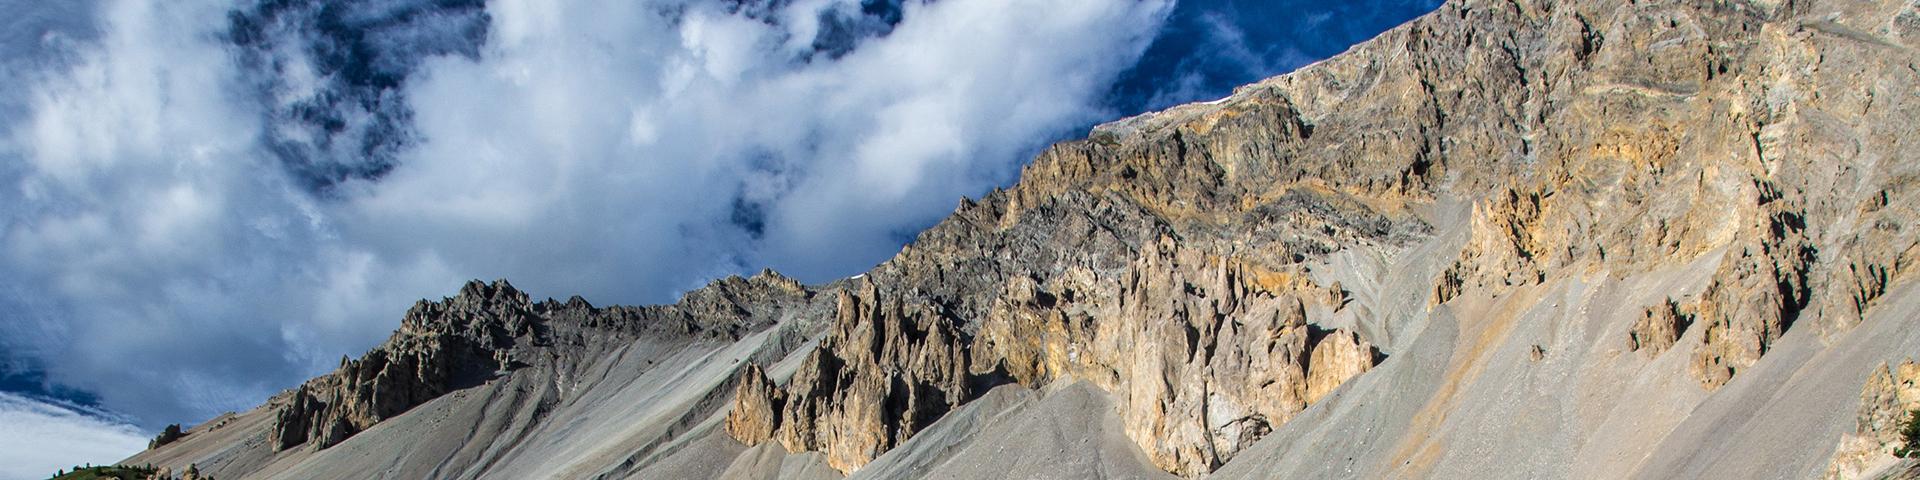 Érosion différentielle des roches calcaires, Haute-Alpes